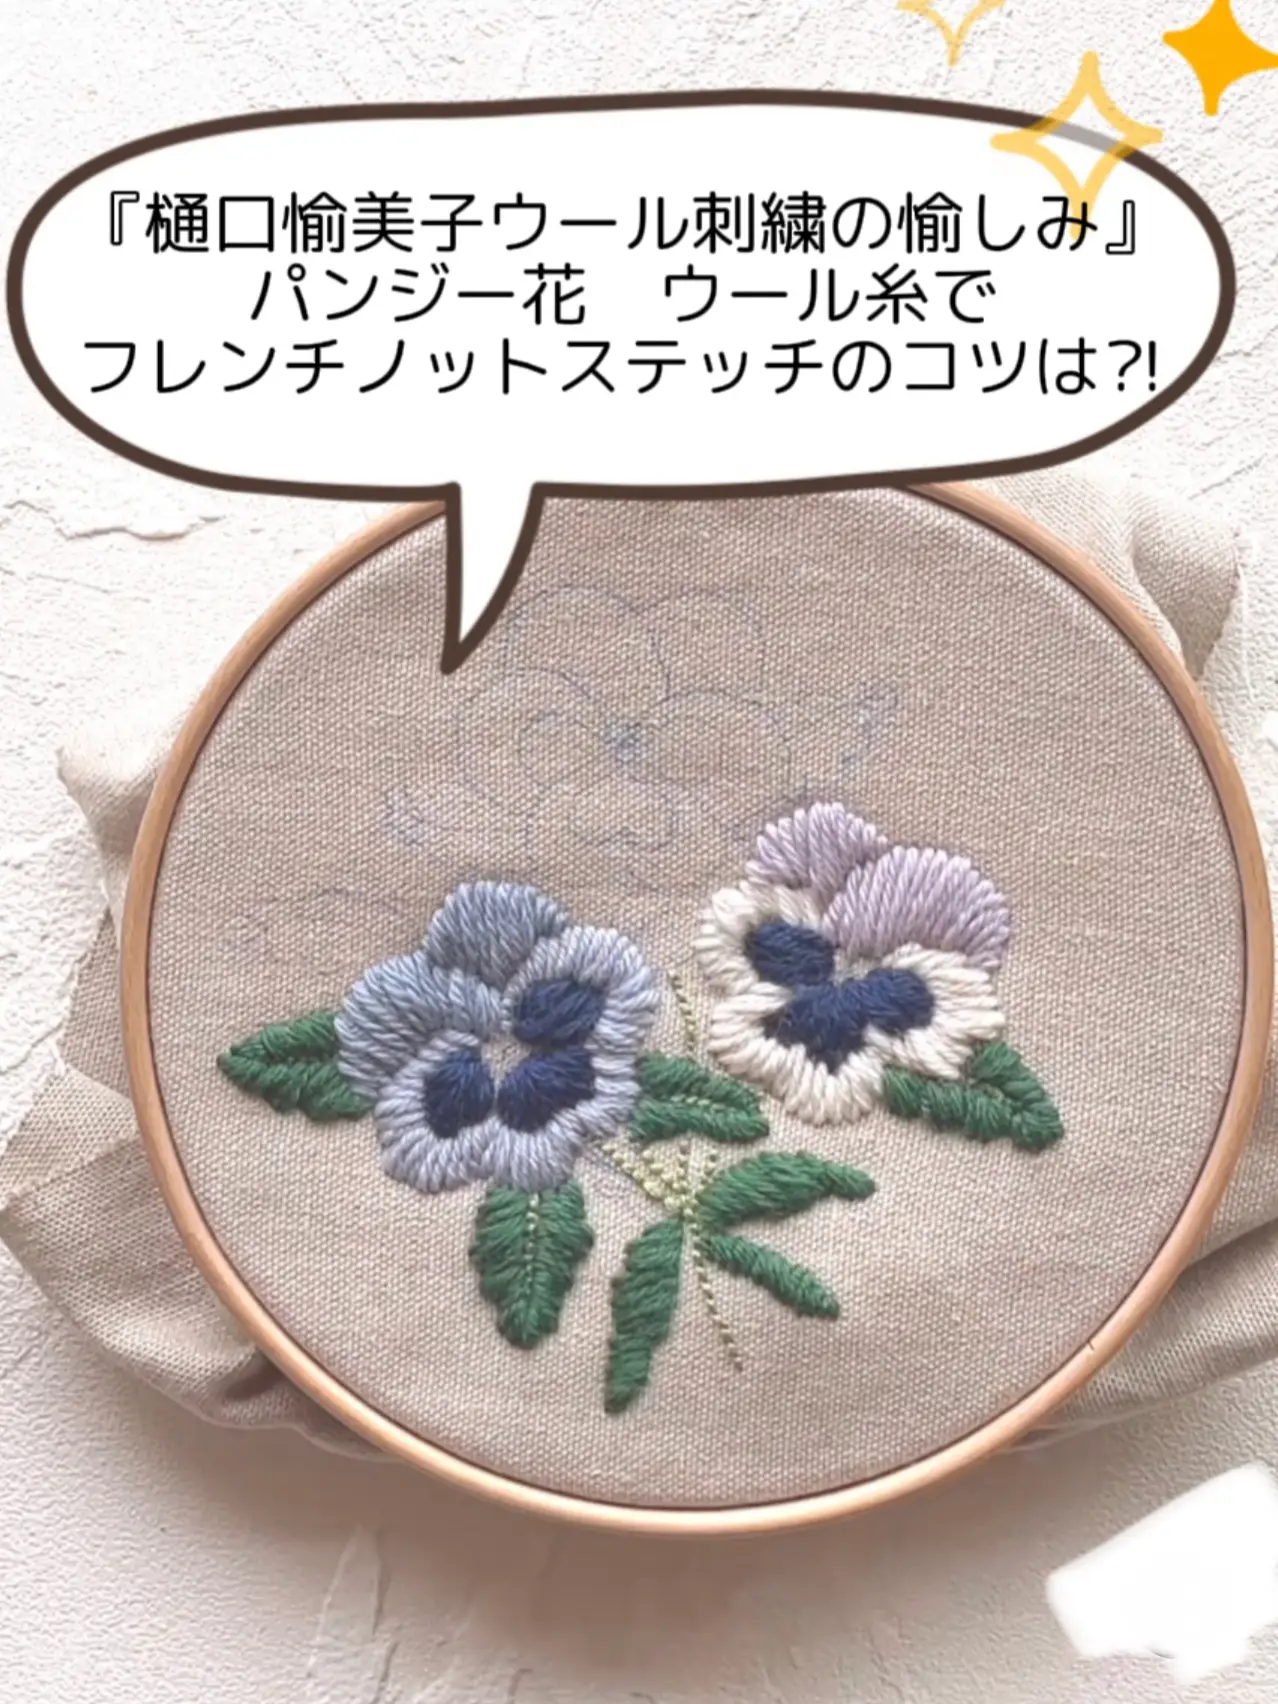 樋口愉美子 ウール刺繍の愉しみ 刺繍糸 ❤️免税店サイト 